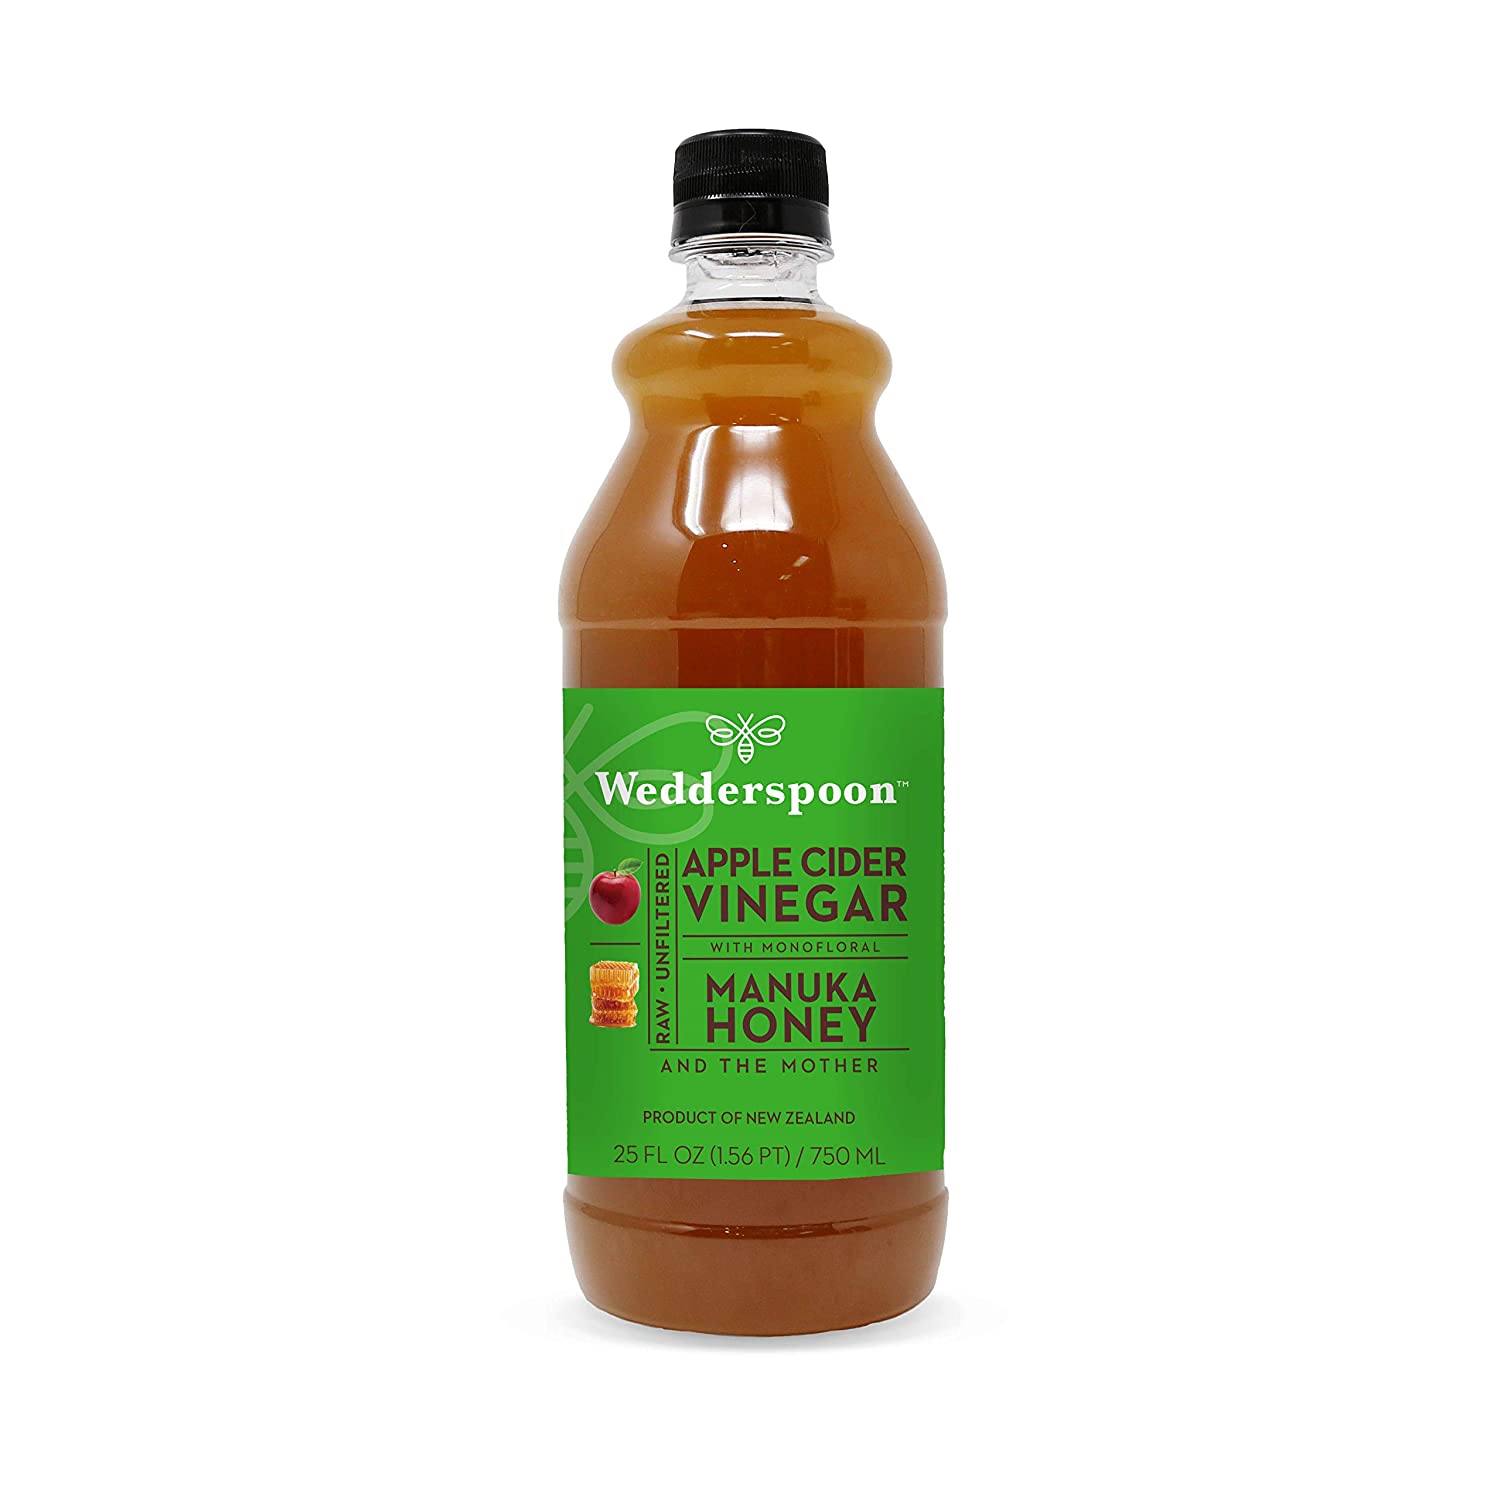 6. Wedderspoon Apple Cider Vinegar